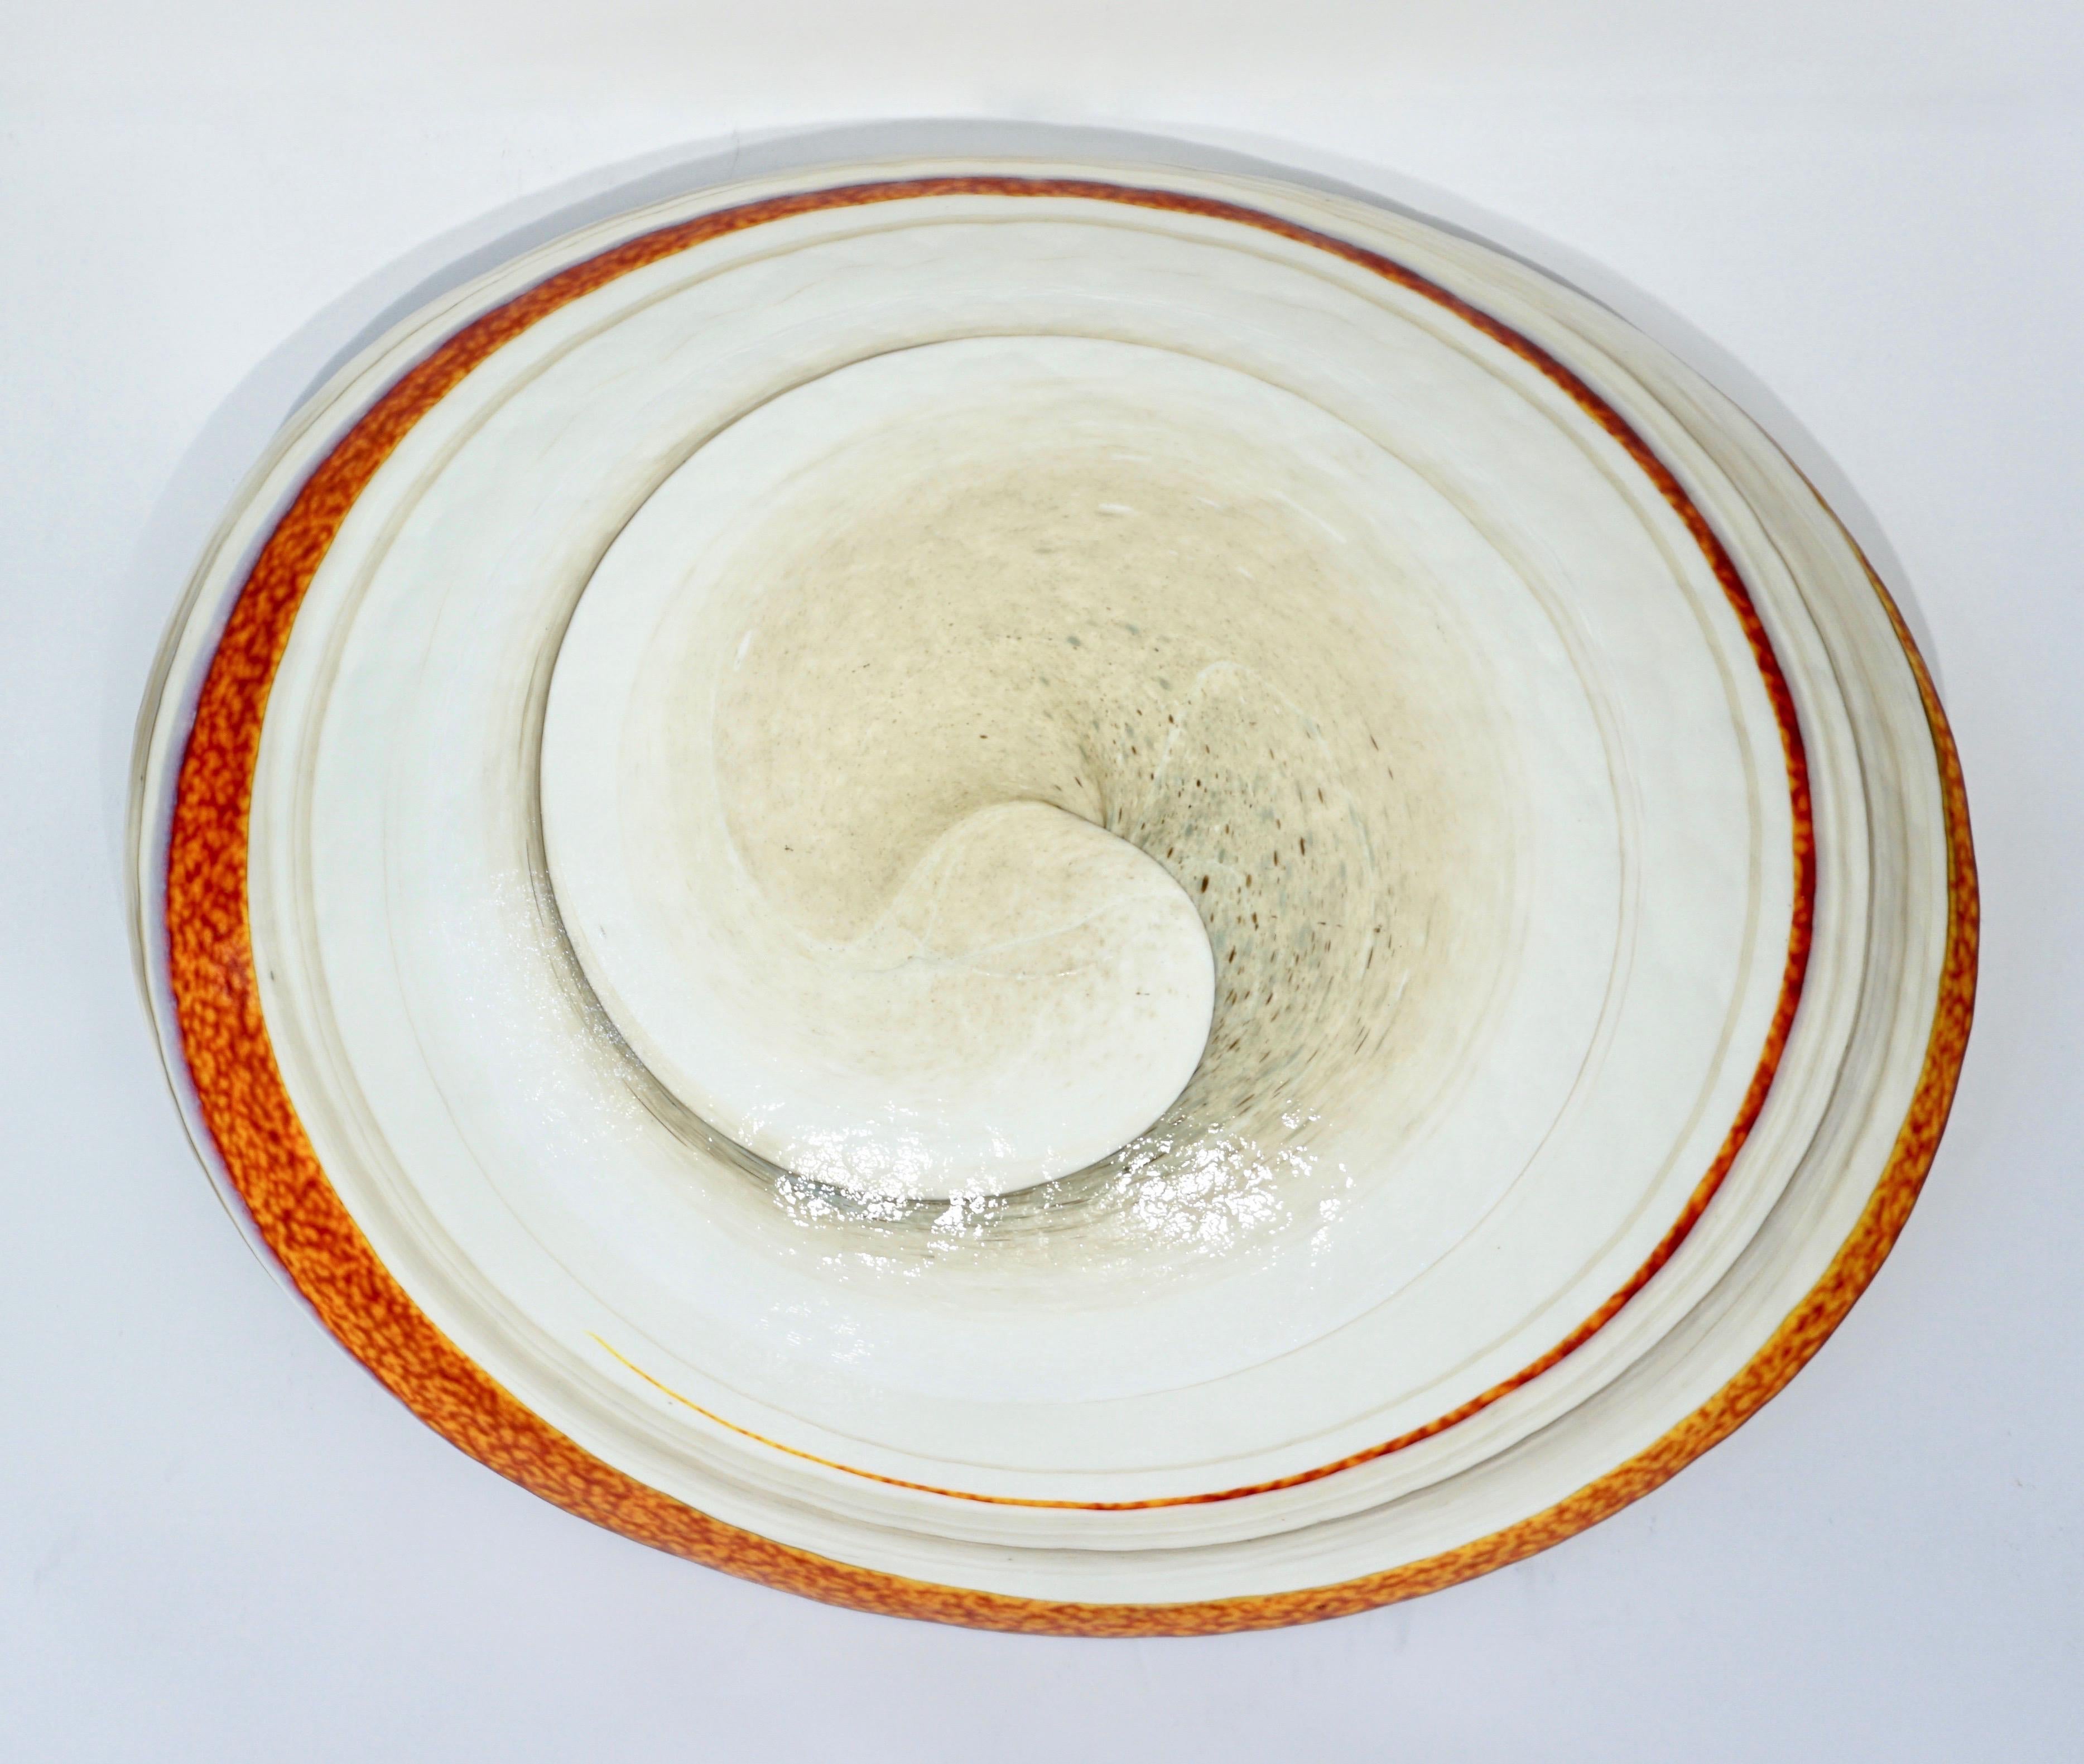 Organic Italian Pearl White Murano Glass Bowl with Swirled Wine Red Murrine 1